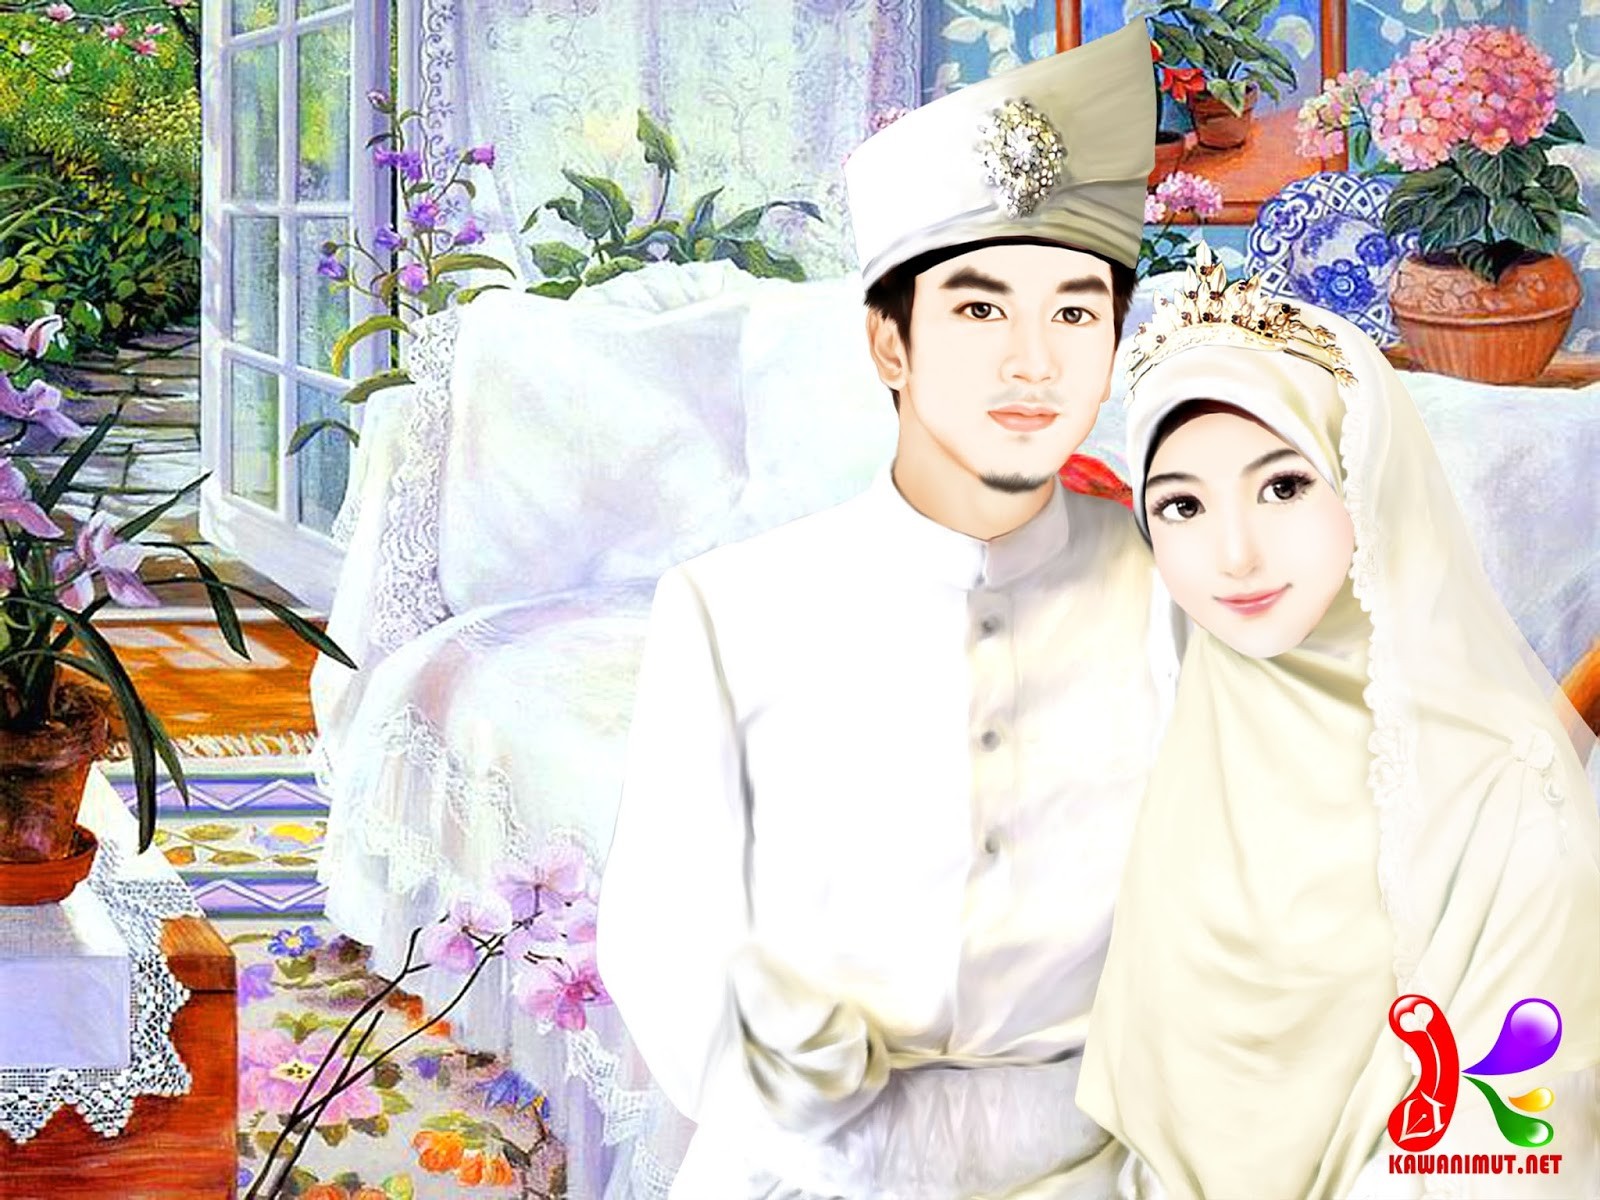 Foto Pernikahan Wanita Berhijab New Gambar Kartun Muslimah - Susan Rios , HD Wallpaper & Backgrounds